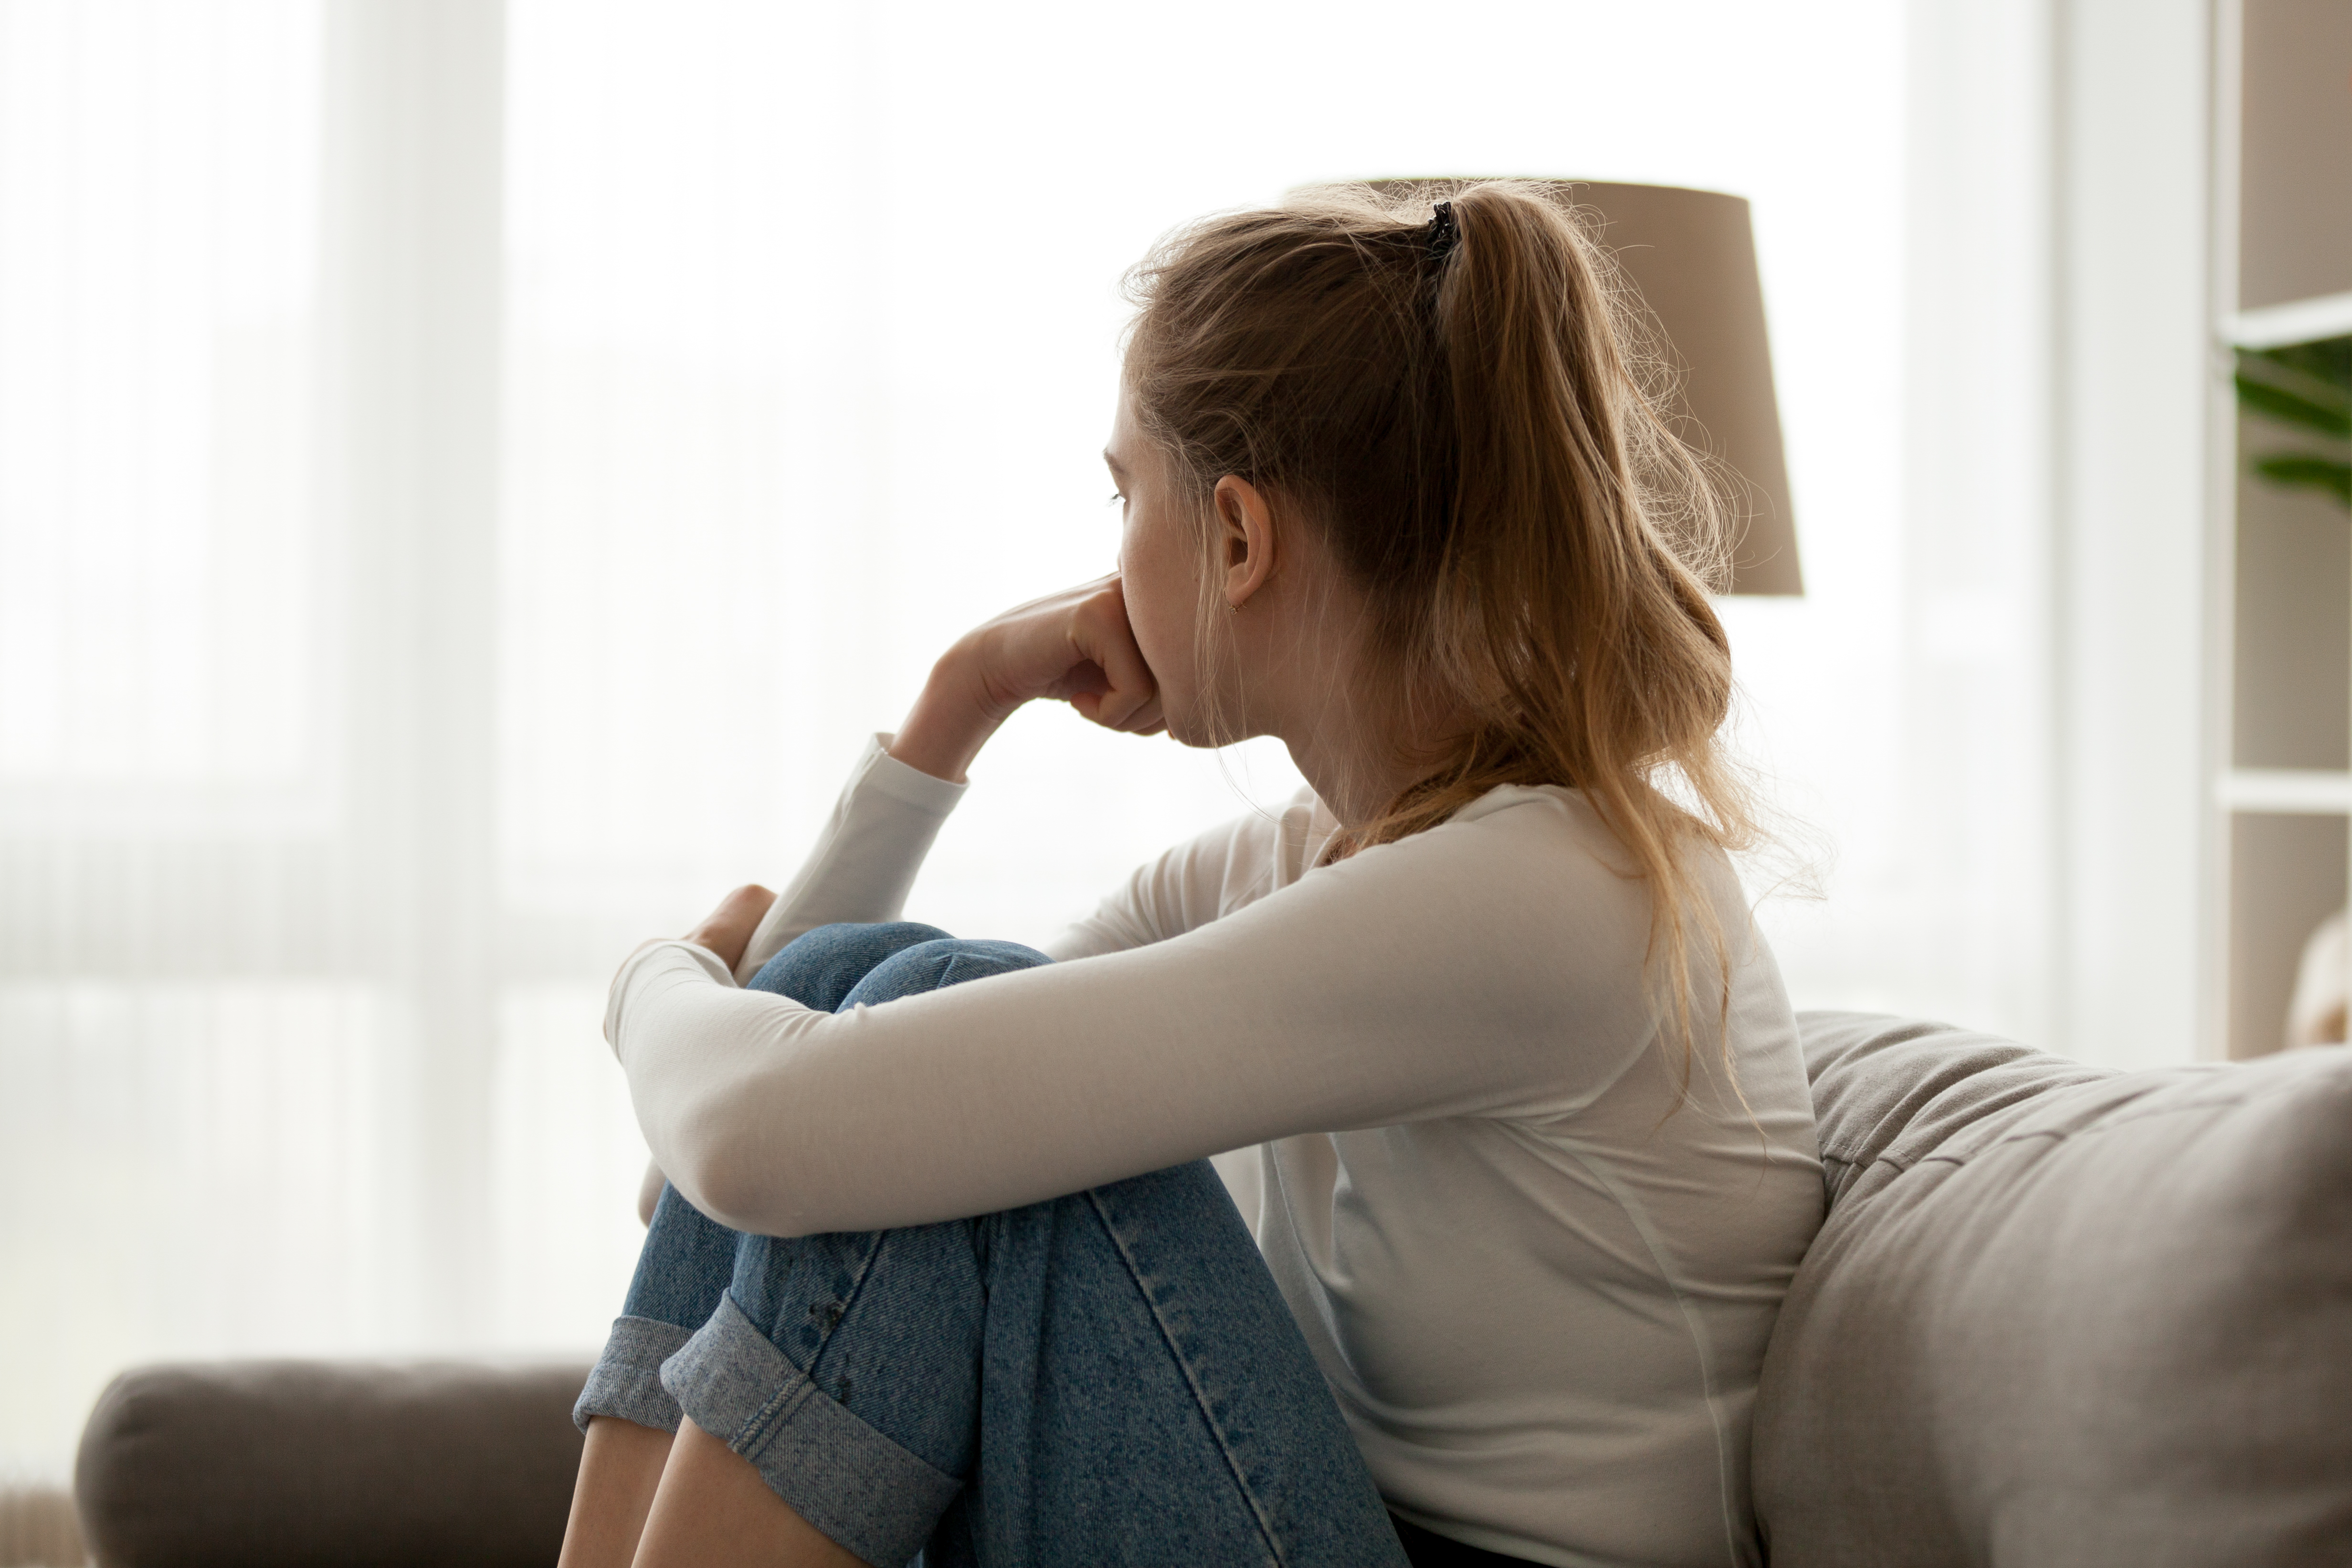 Eine junge Frau mit traurigem Blick | Quelle: Shutterstock